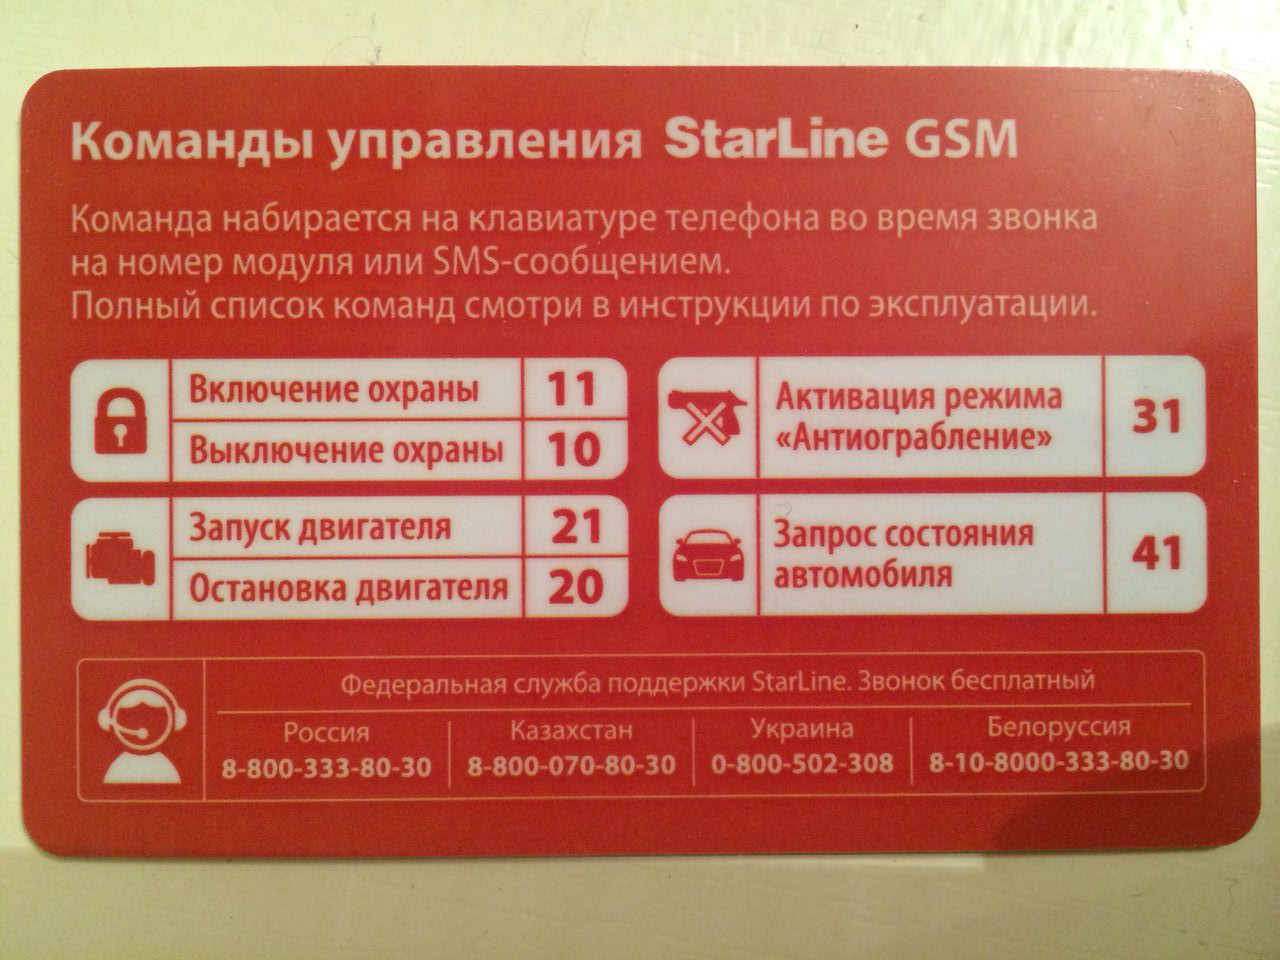 Старлайн а93 не открывает двери. Старлайн а93 GSM модуль. Коды команд старлайн GSM а93. SMS команды STARLINE a93. Komandi upravleniya STARLINE GSM а93.